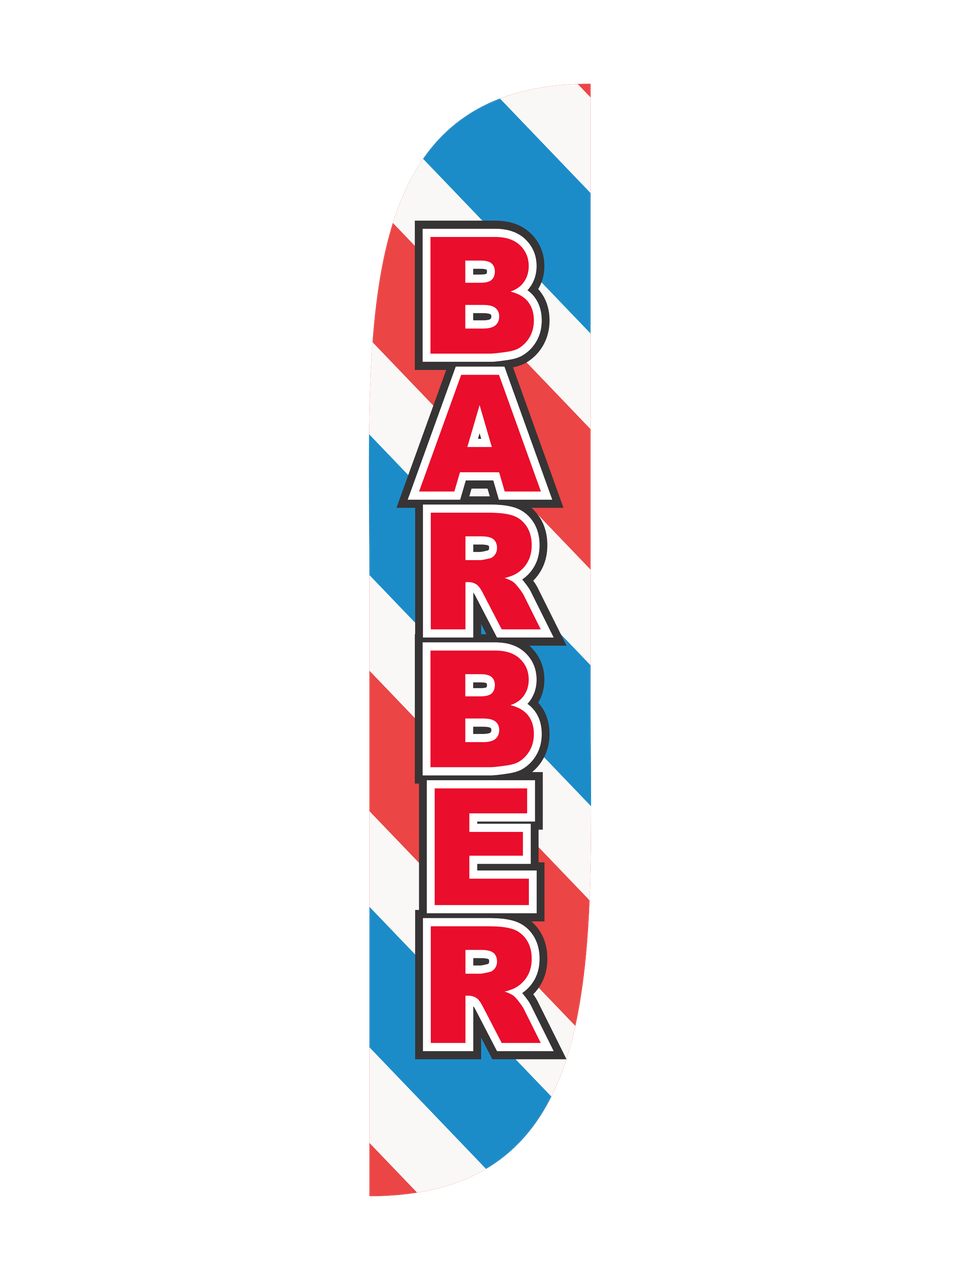 Barber 12ft Feather Flag Barber Pole